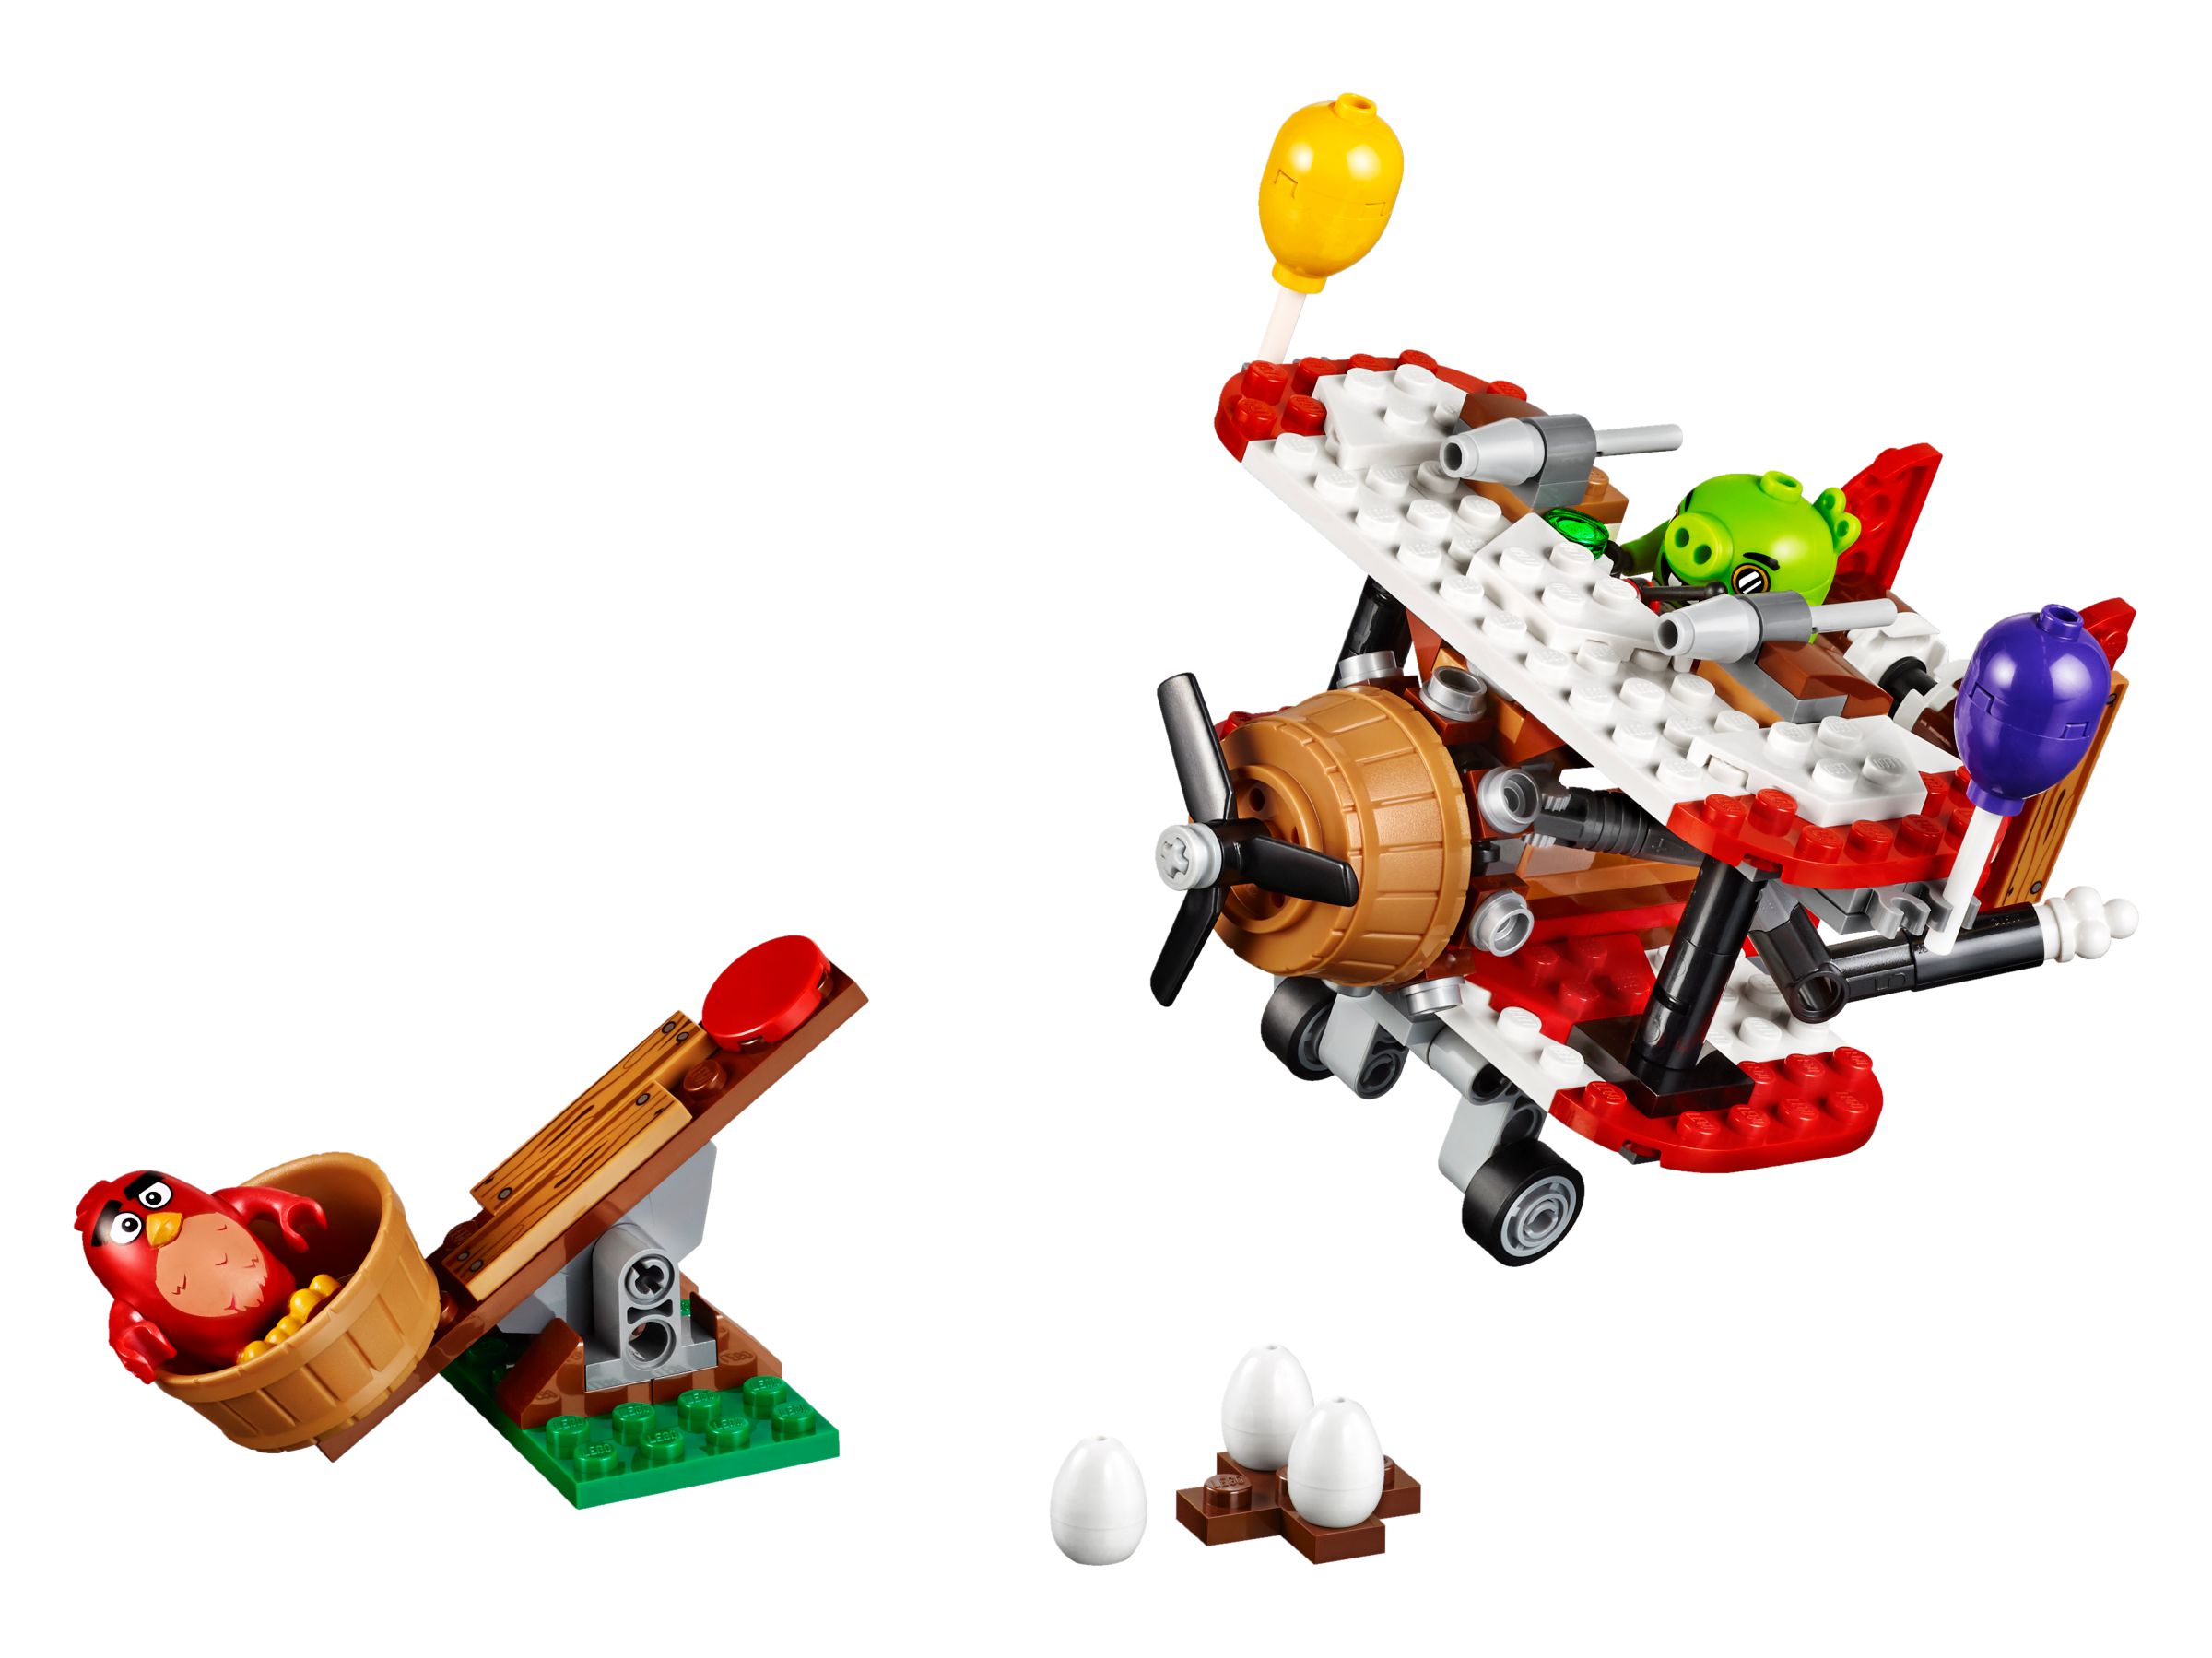 LEGO Angry Birds 75822 Piggy Plane Attack LEGO_75822.jpg